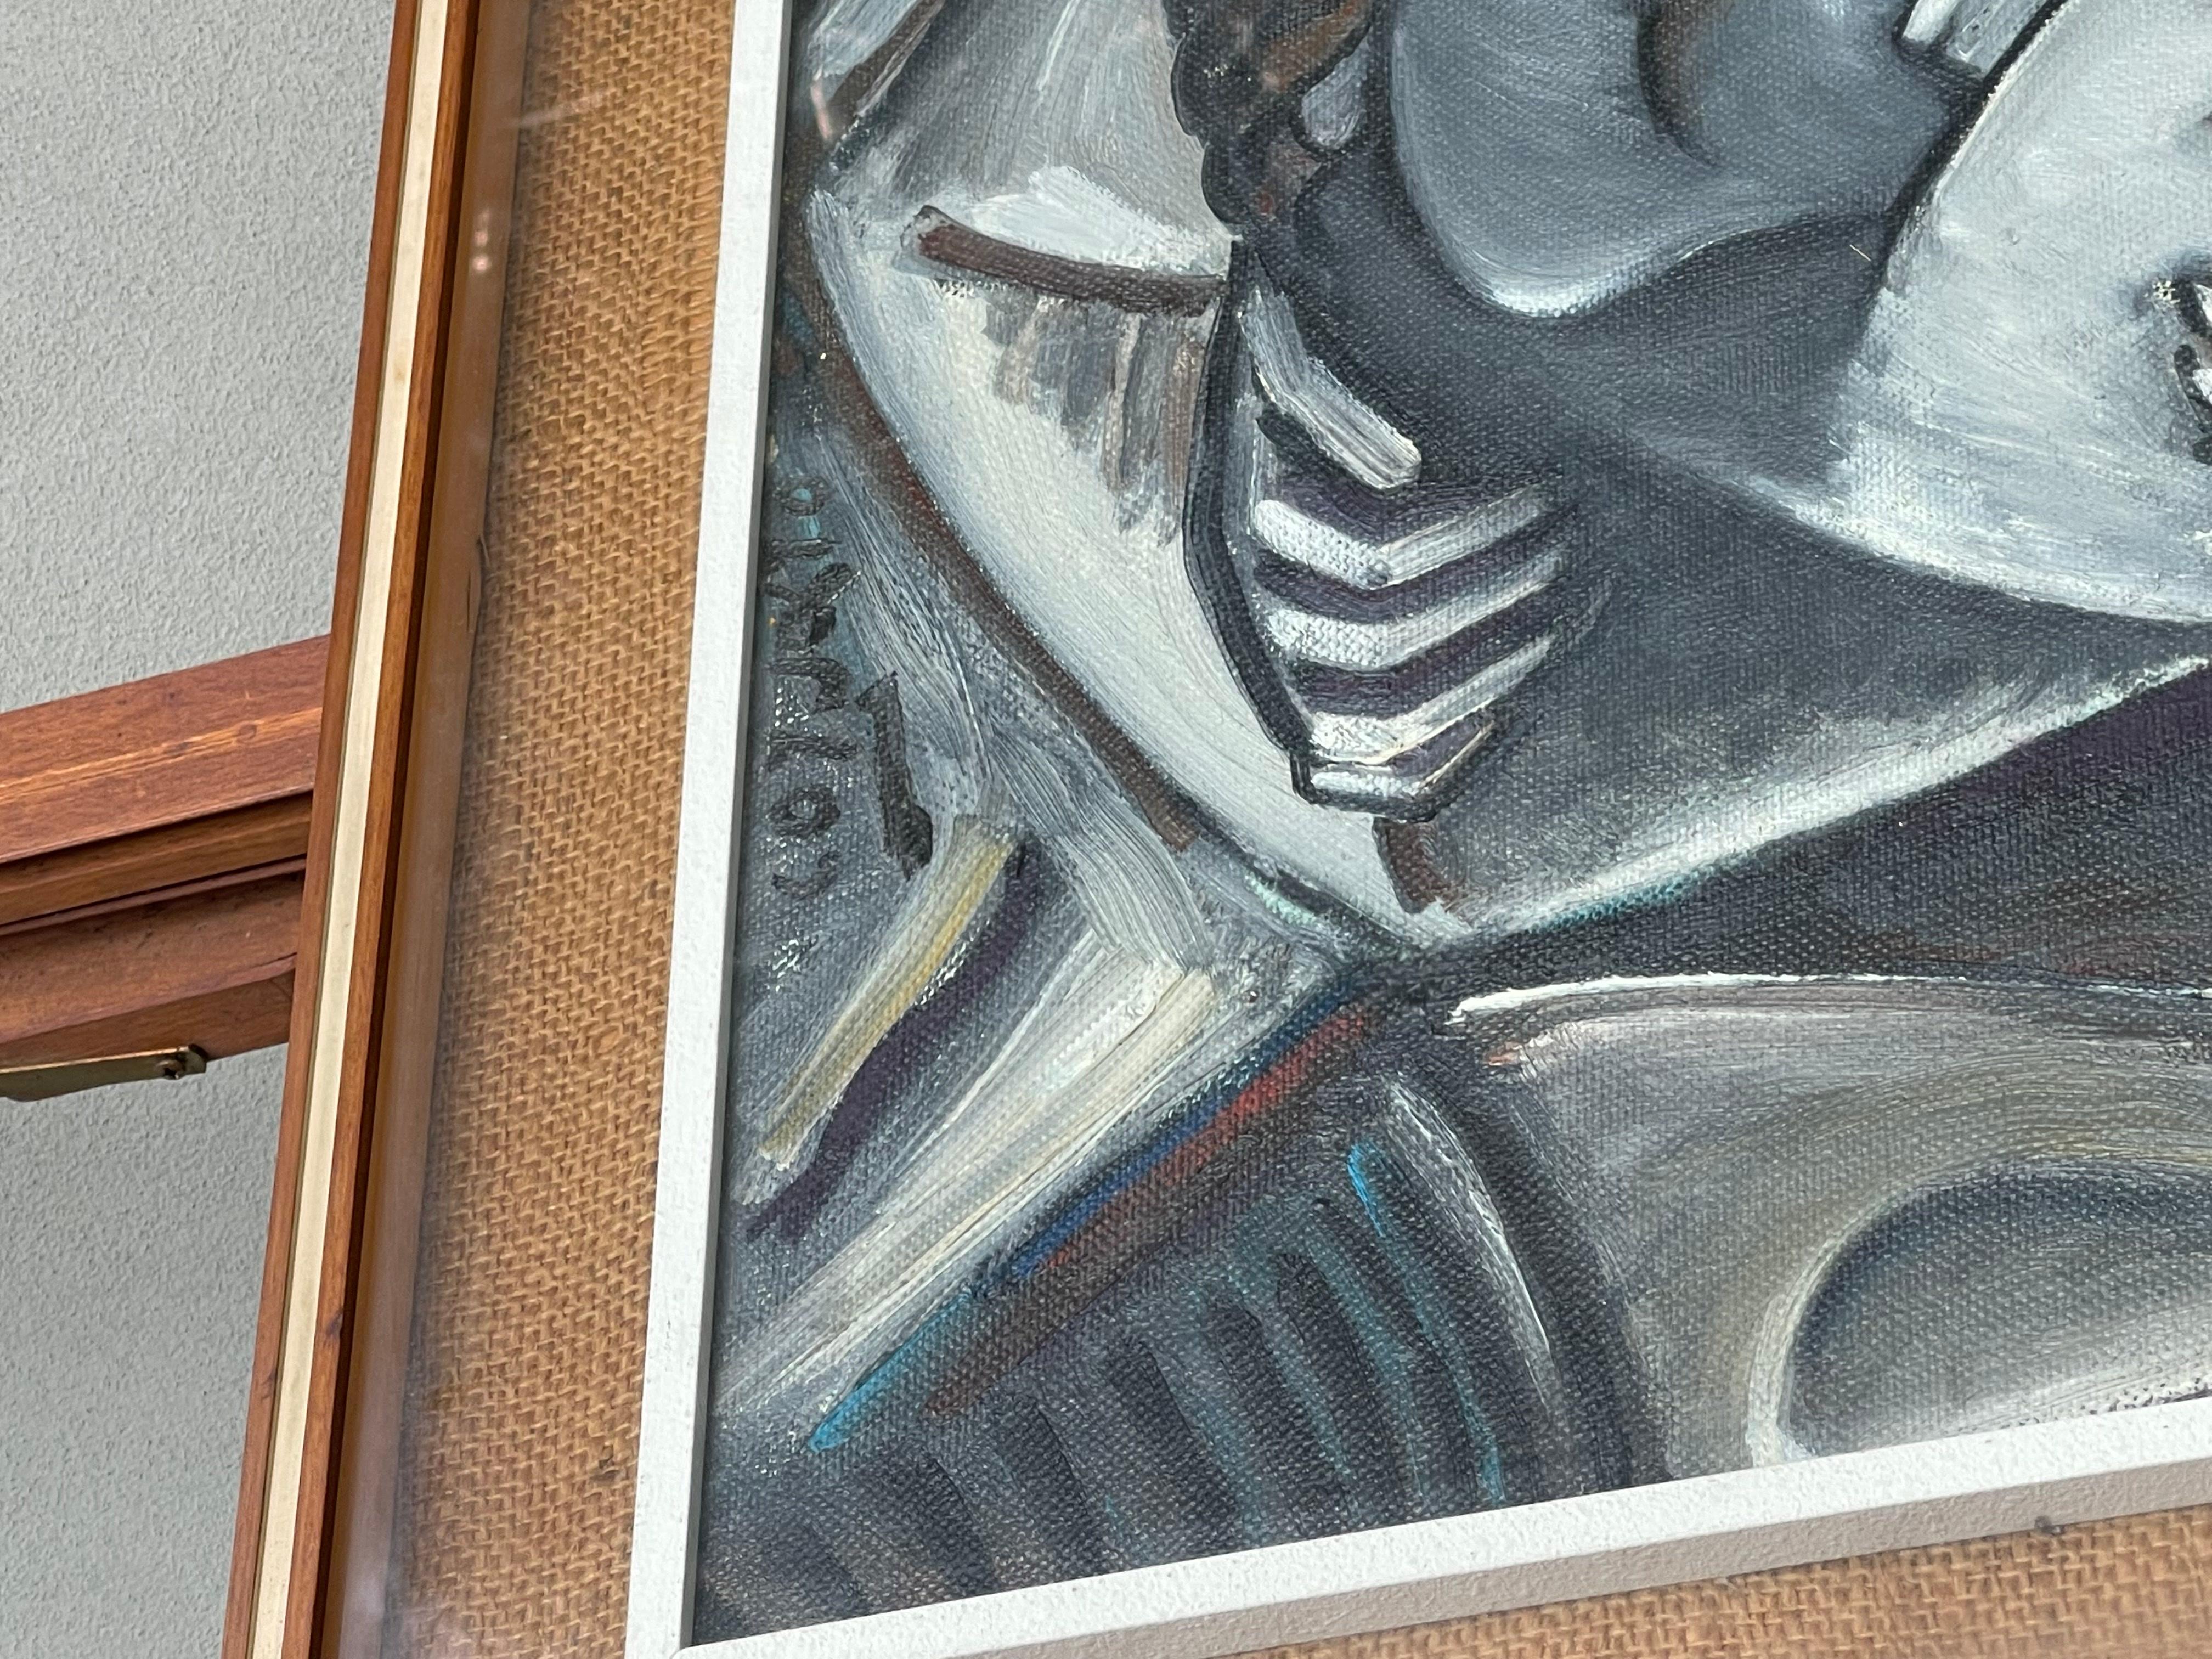 dipinto olio su tela - innamorati - xx secolo - pittore anonimo 

Descrizione : 
dipinto sulle tonalità del grigio rappresentante due innamorati 
firmato 
pittore ignoto 

Origini : 
Italia

Periodo di produzione :